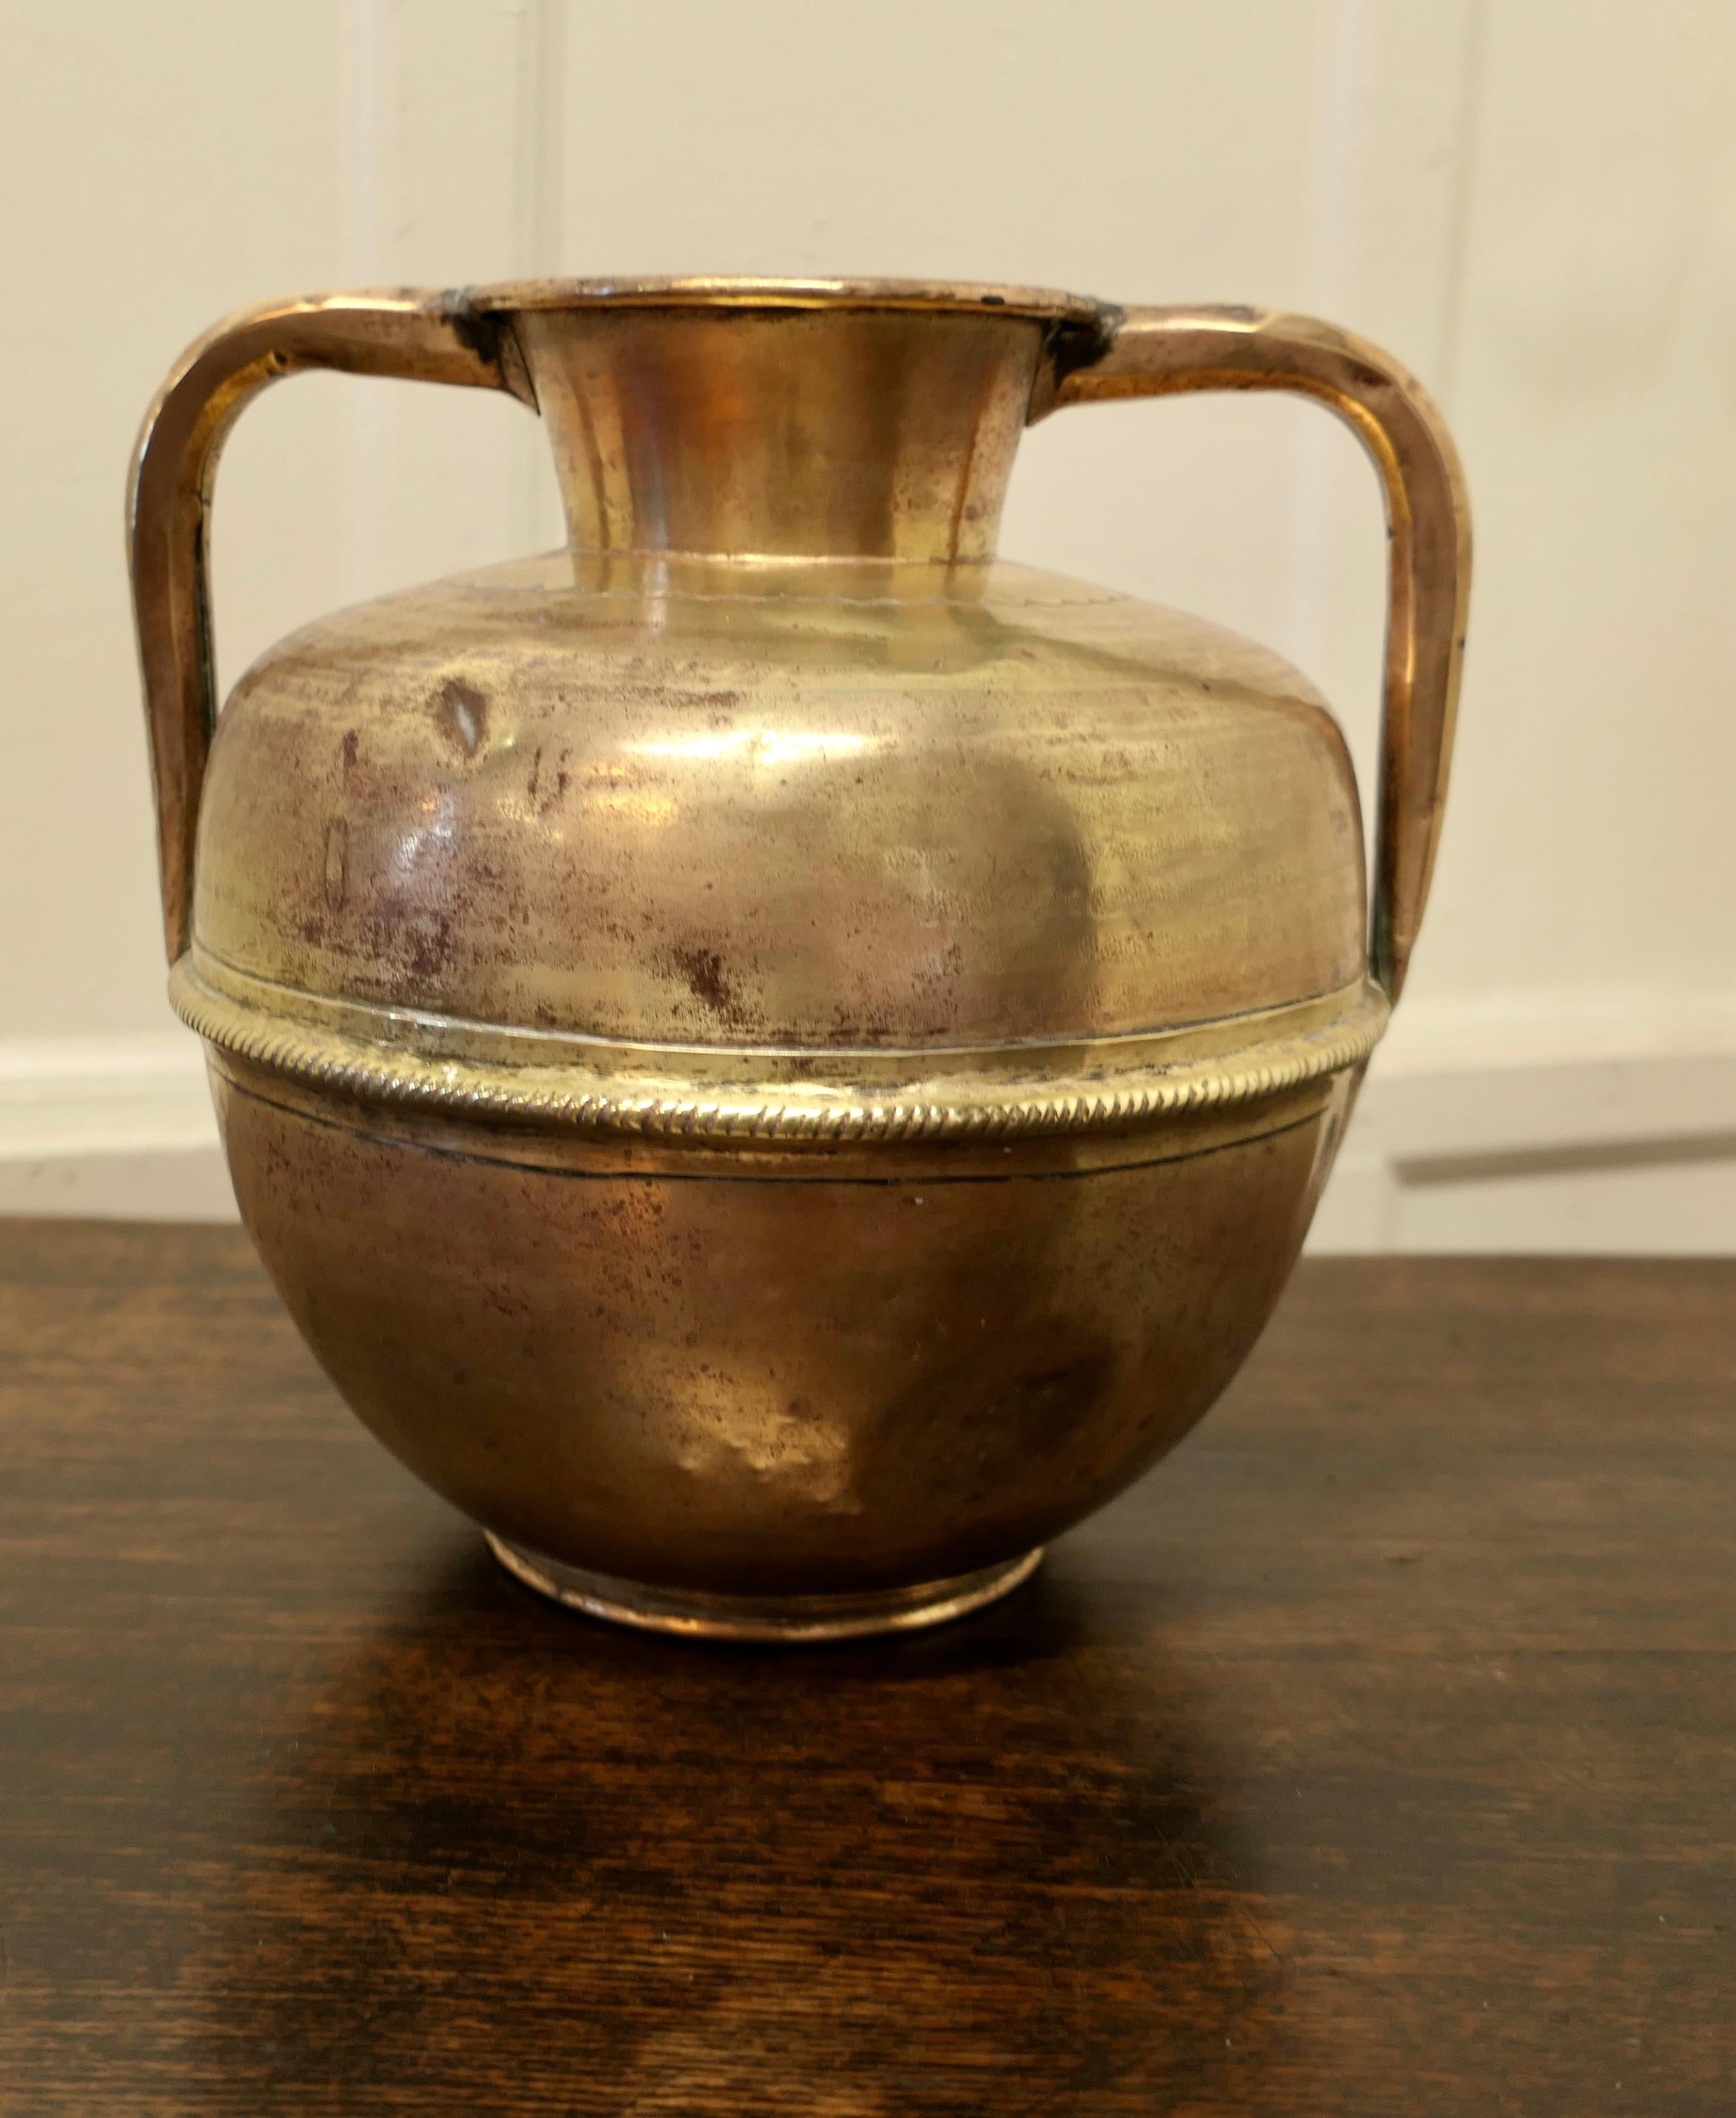 Messingurne mit Griffen aus der Zeit des Arts and Crafts.

Ein schönes, altes Stück aus massivem, geschlagenem Messing. Die Vase hat eine 